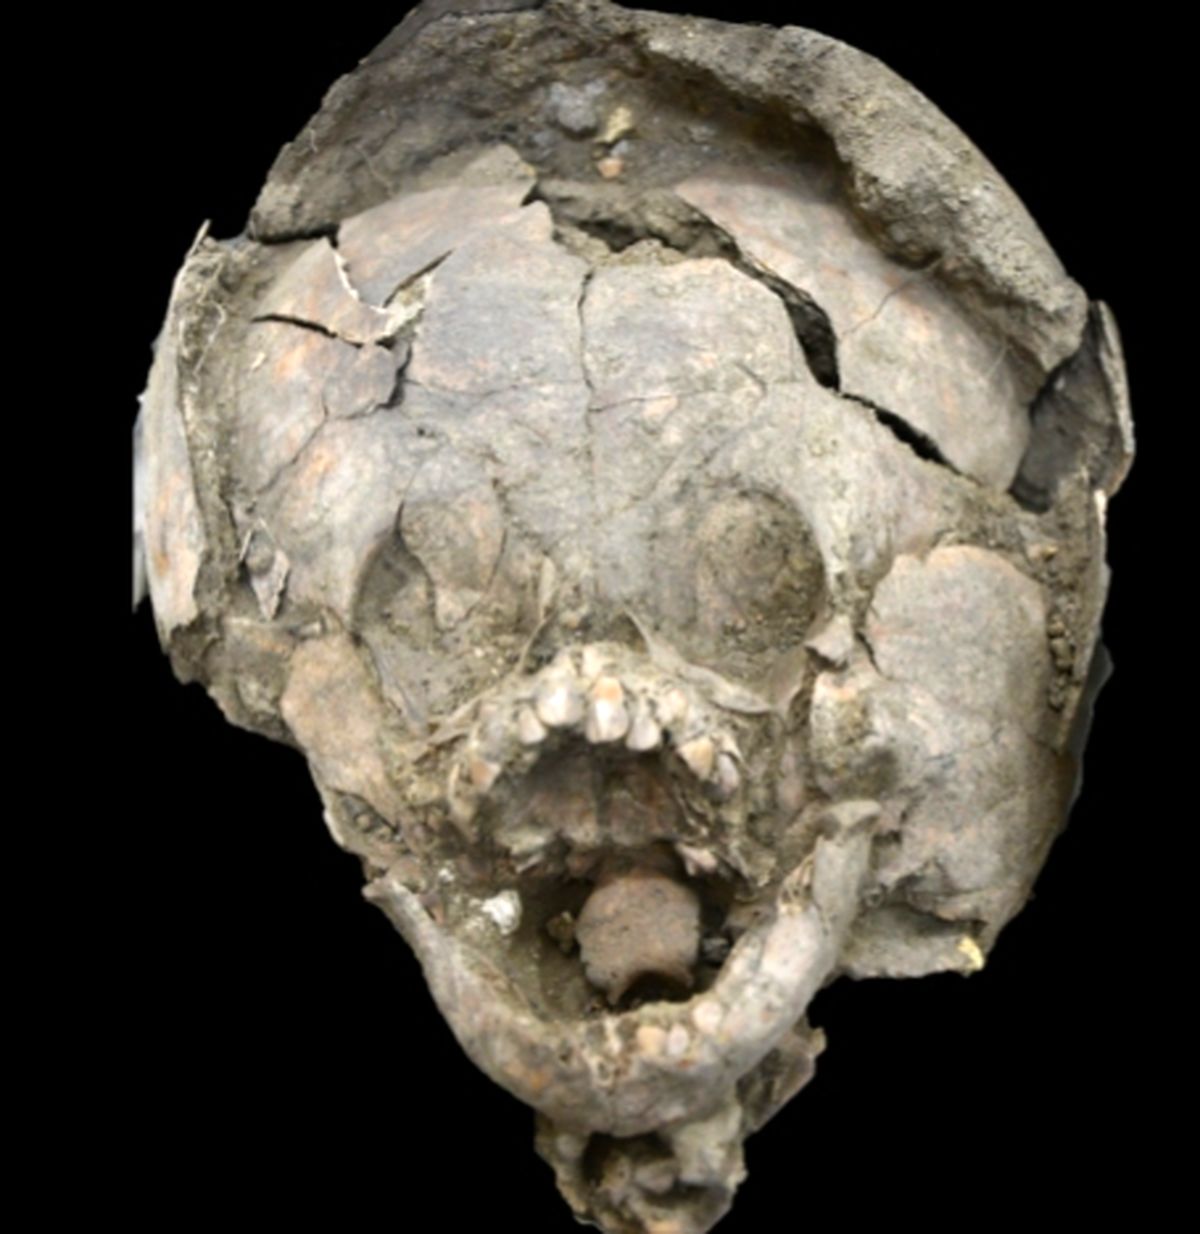  کشف بقایای نوزادانی ۲ هزار ساله با کلاه ایمنی!